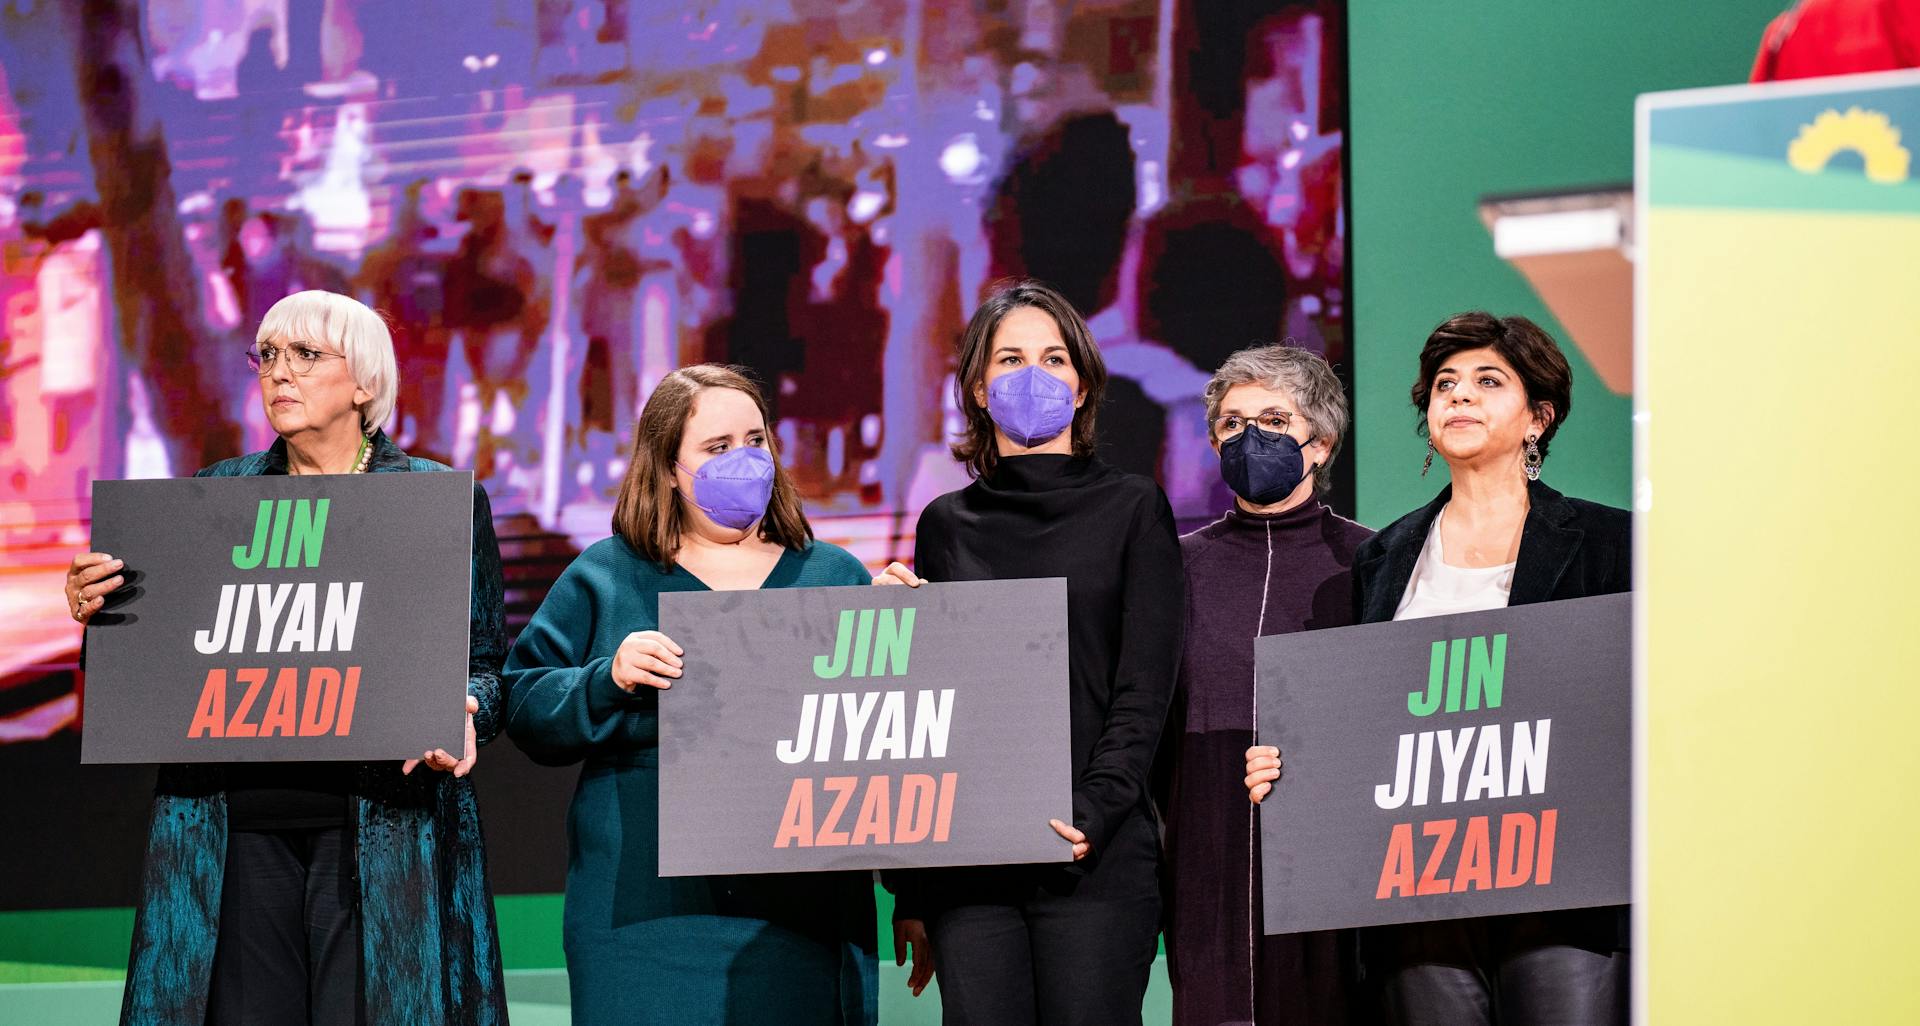 Fünf Frauen stehen nebeneinander vor einer Leinwand, auf der schemenhaft in grellem Lila Menschen zu sehen sind,und halten schwarze Schilder hoch. Die Aufschrift in grün, weiß, schwarz: "Jin Jiyan Azadi"